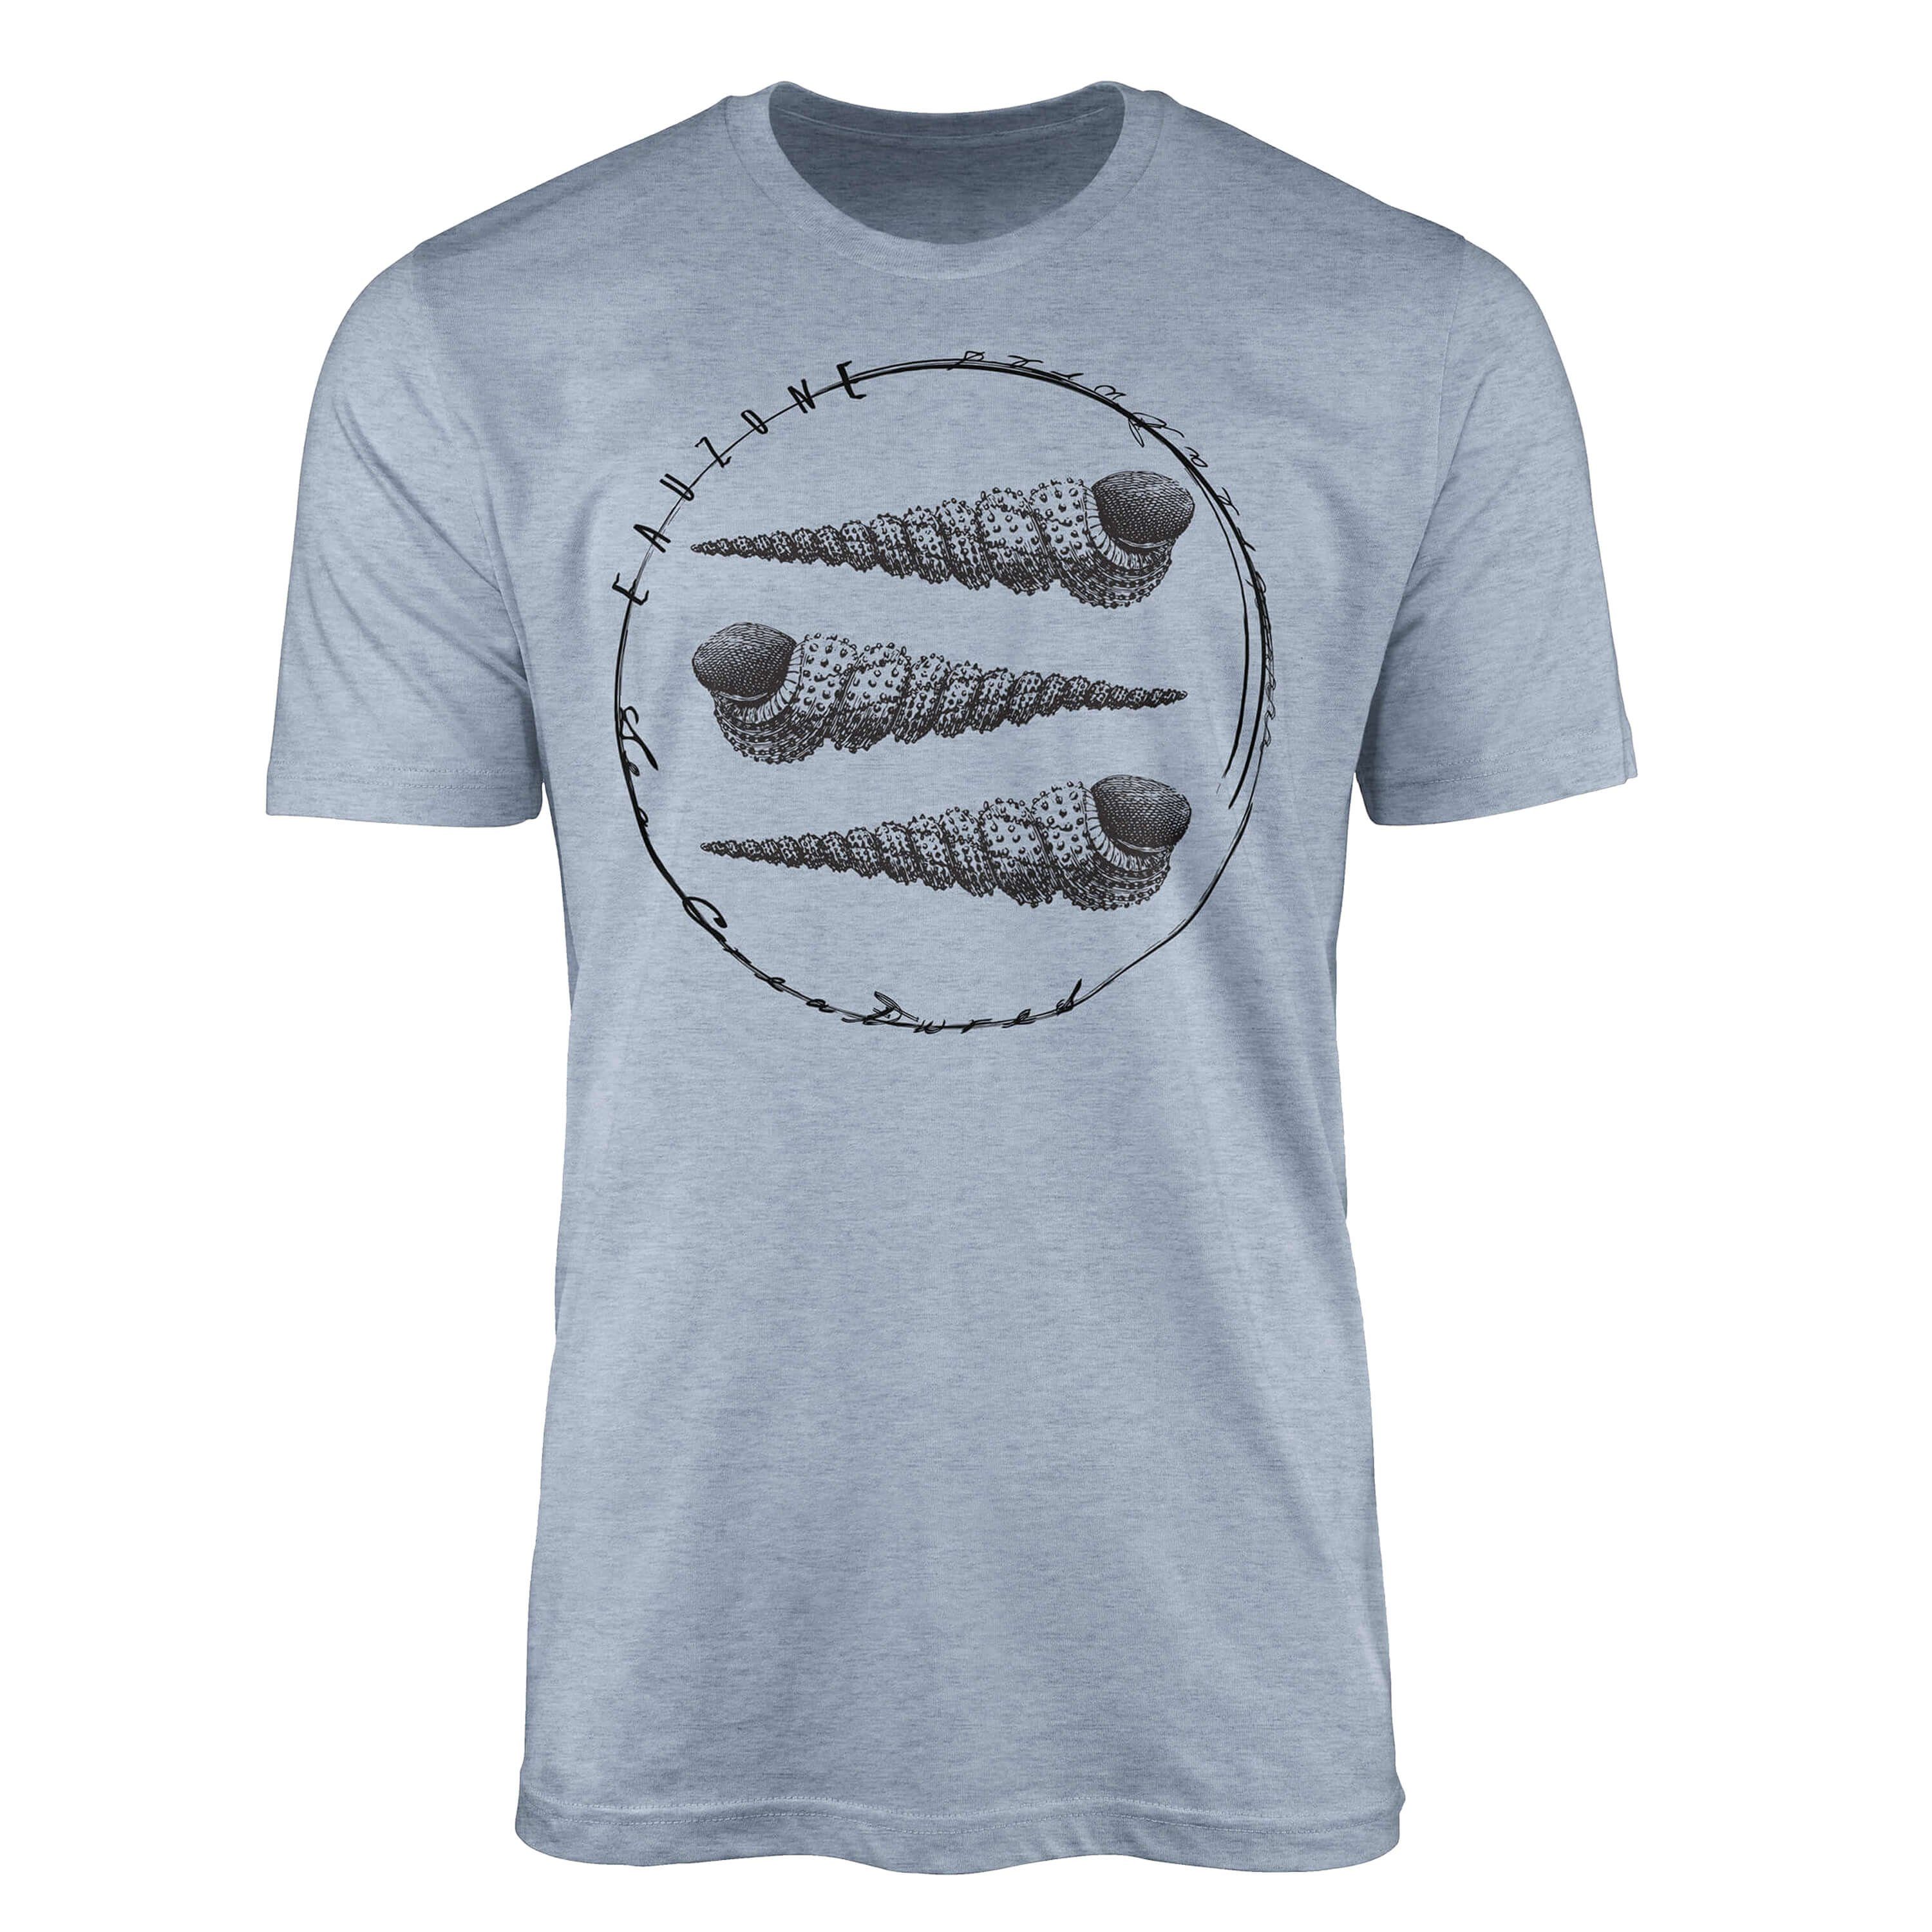 Sinus Art T-Shirt Serie: T-Shirt Schnitt Sea 092 Struktur - Stonewash Sea Creatures, Denim Fische feine sportlicher / und Tiefsee